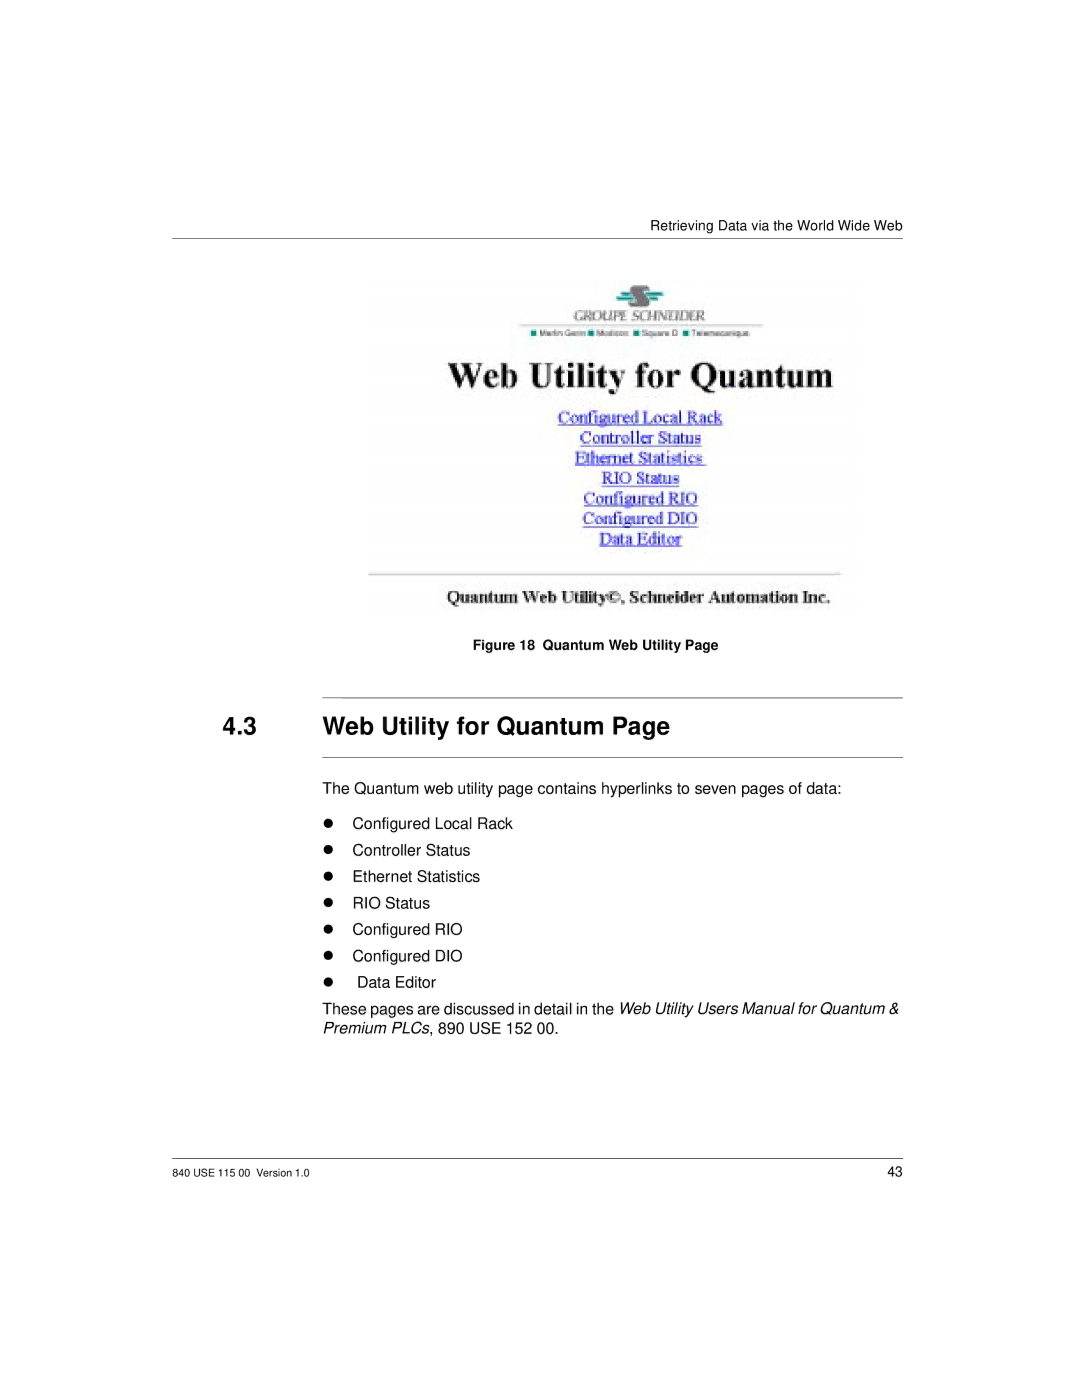 Schneider Optics Modicon Quantum Ethernet manual Web Utility for Quantum, Quantum Web Utility 